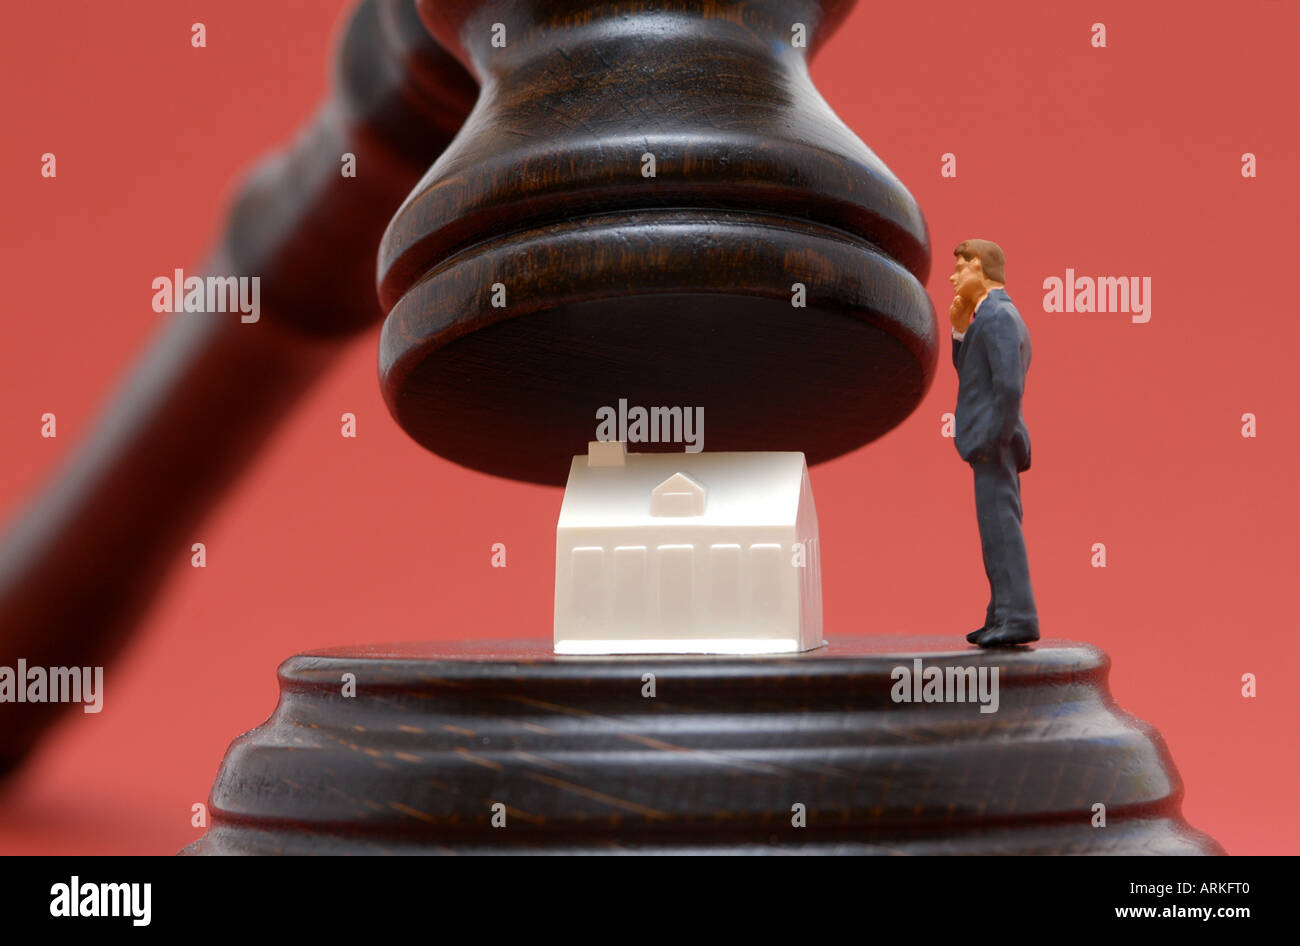 Symbolische Foto: Zwangsversteigerung - ein Haus und ein Mann unter einem Richter Hammer. Stockfoto